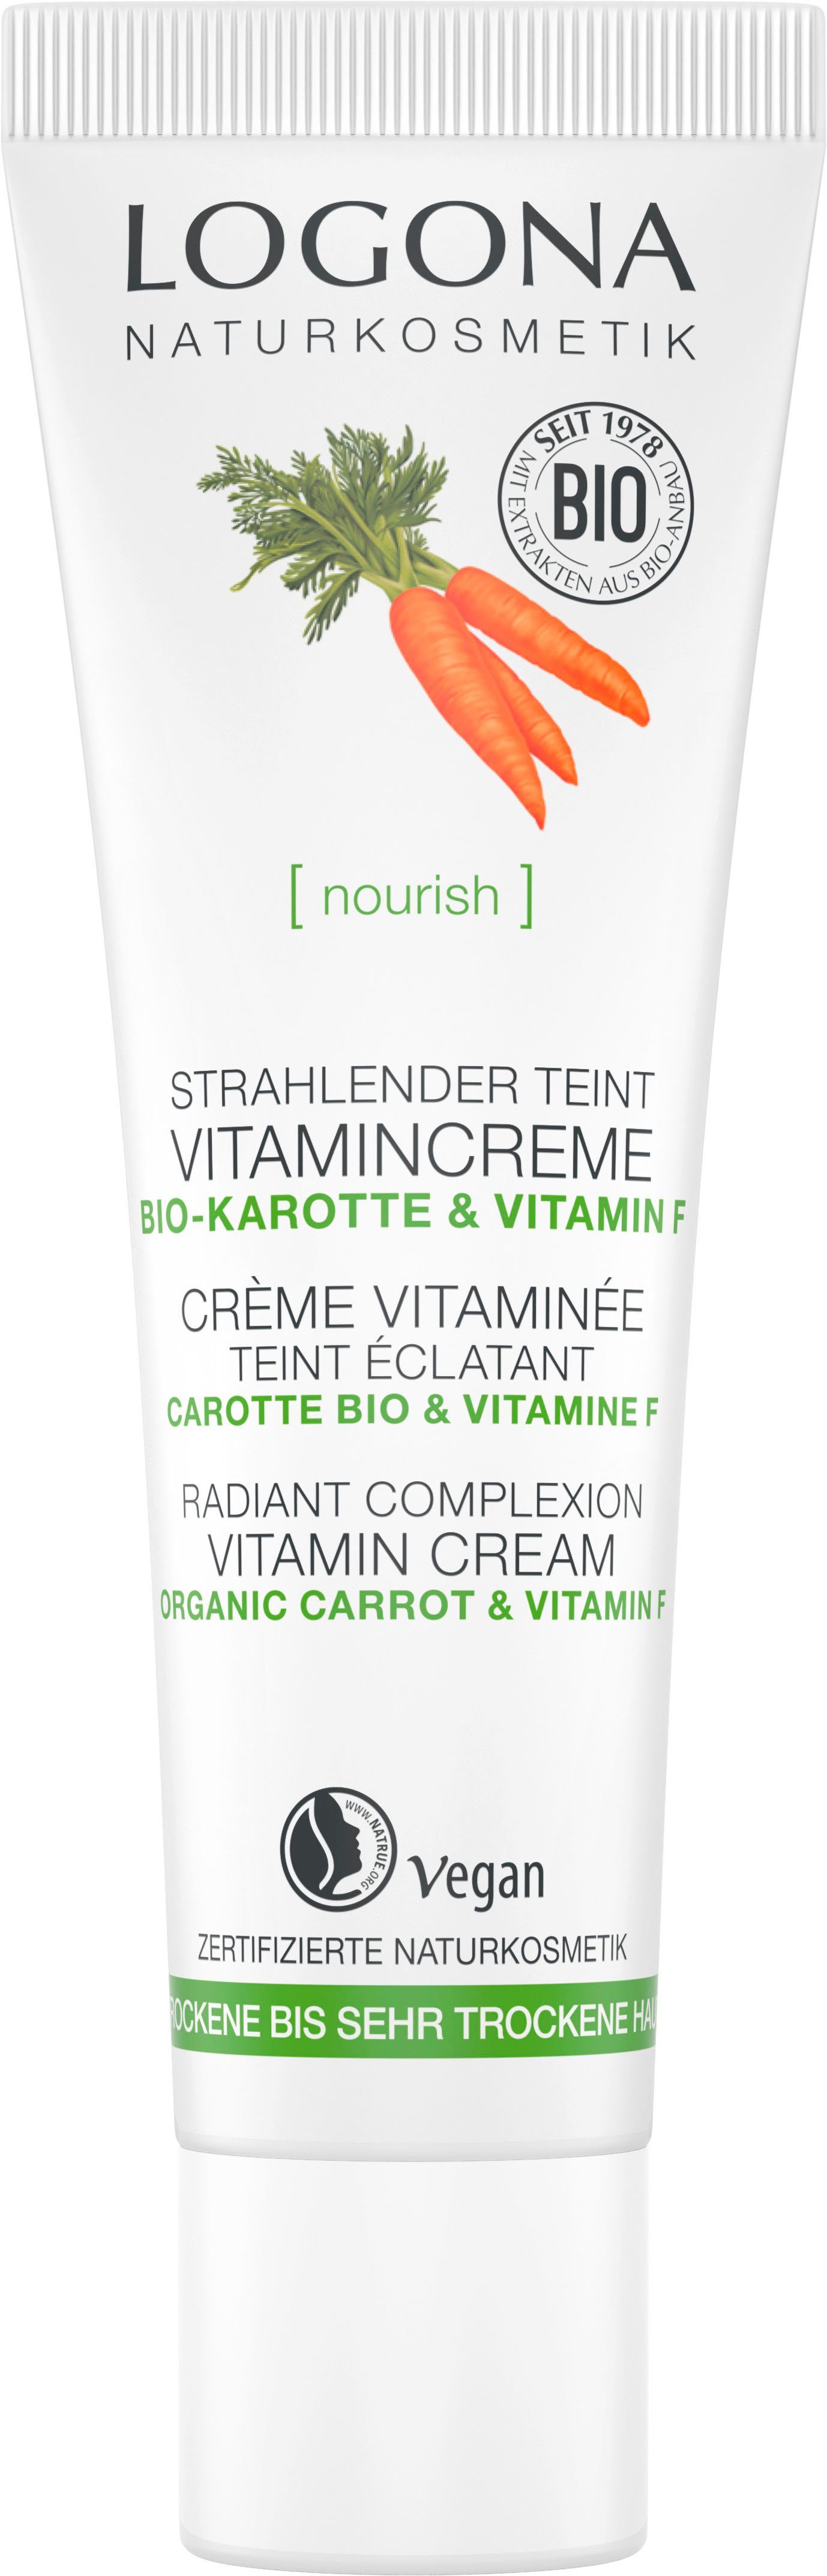 LOGONA veganer Tagescreme zertifizierte Naturkosmetik Logona NaTrue Vit.Creme, Formel [nourish] Teint mit Strahl.